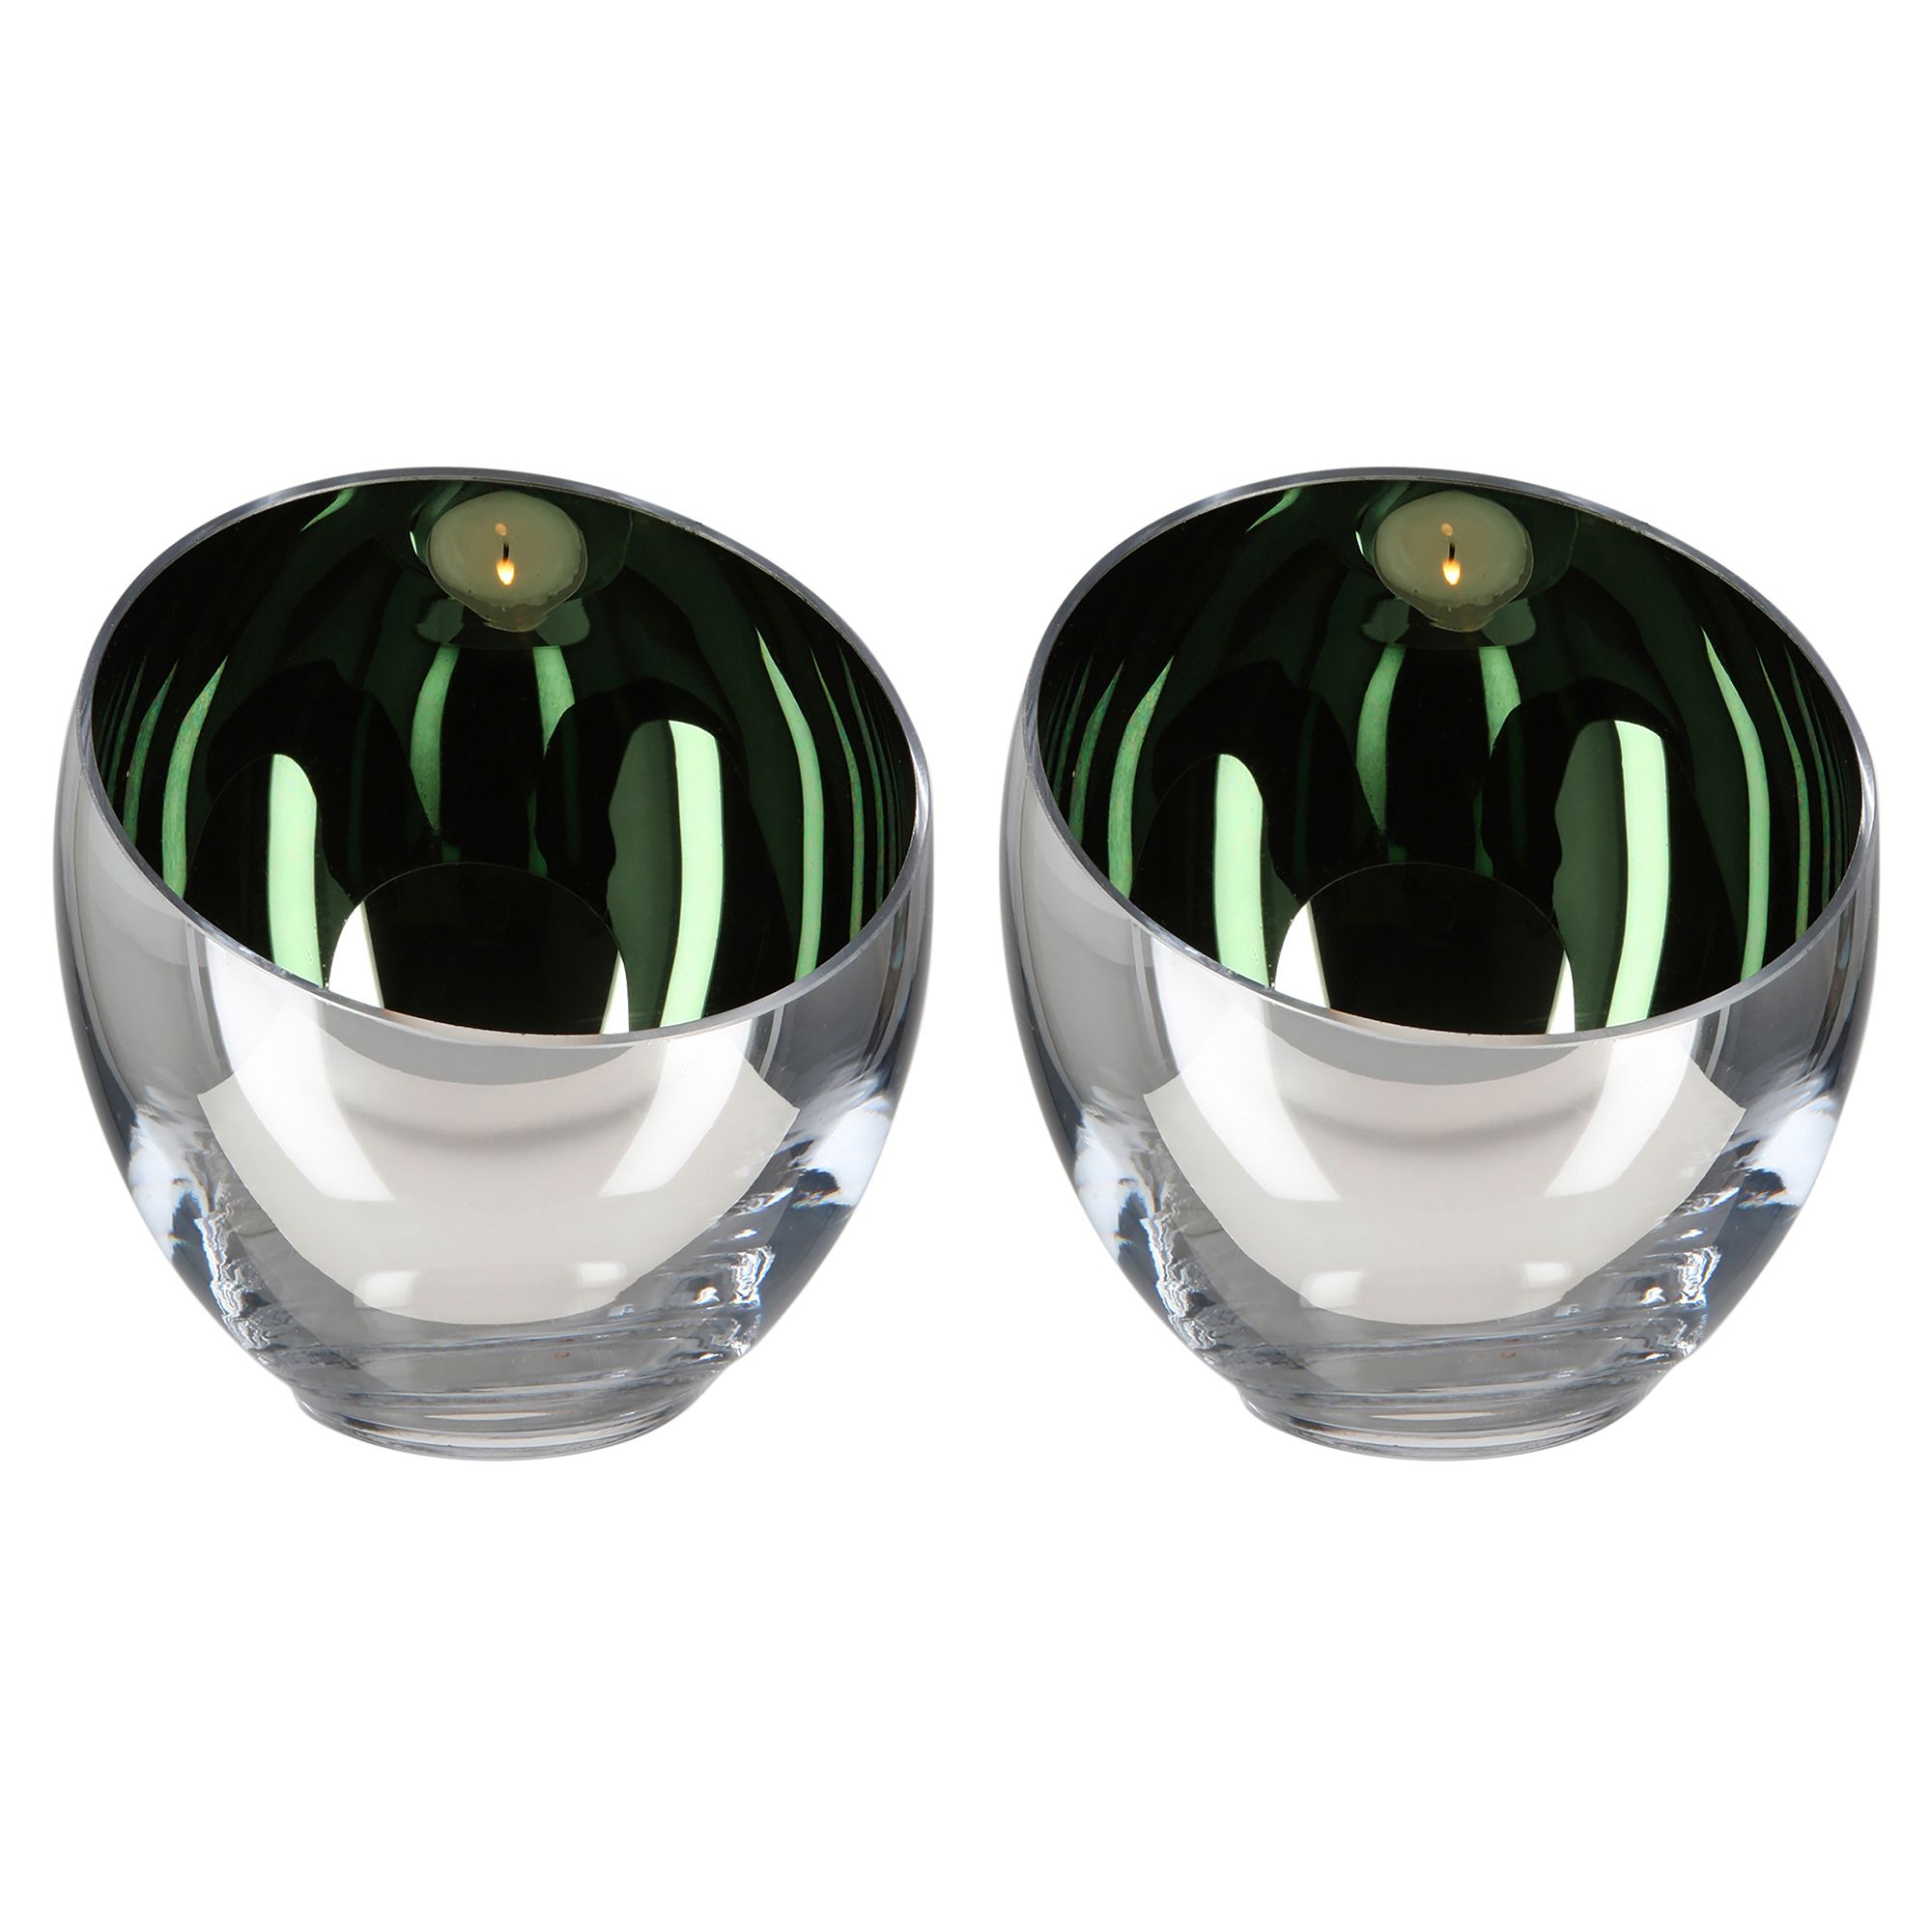 FINK Teelichthalter CANDY Glas moosgrün mundgeblasen H.11cm, Ø 11cm, 2 Stk